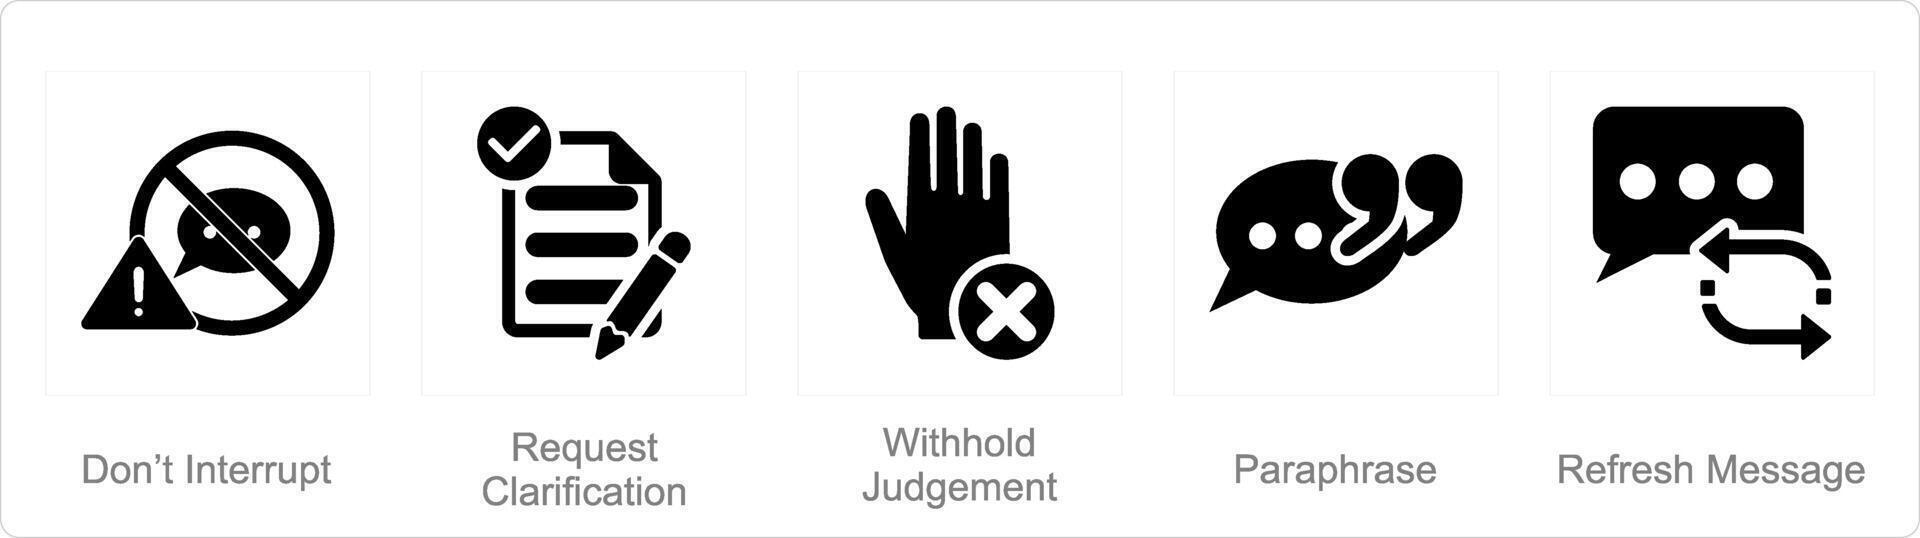 uma conjunto do 5 ativo ouvindo ícones Como não interromper, solicitação esclarecimento, com aguarde julgamento vetor